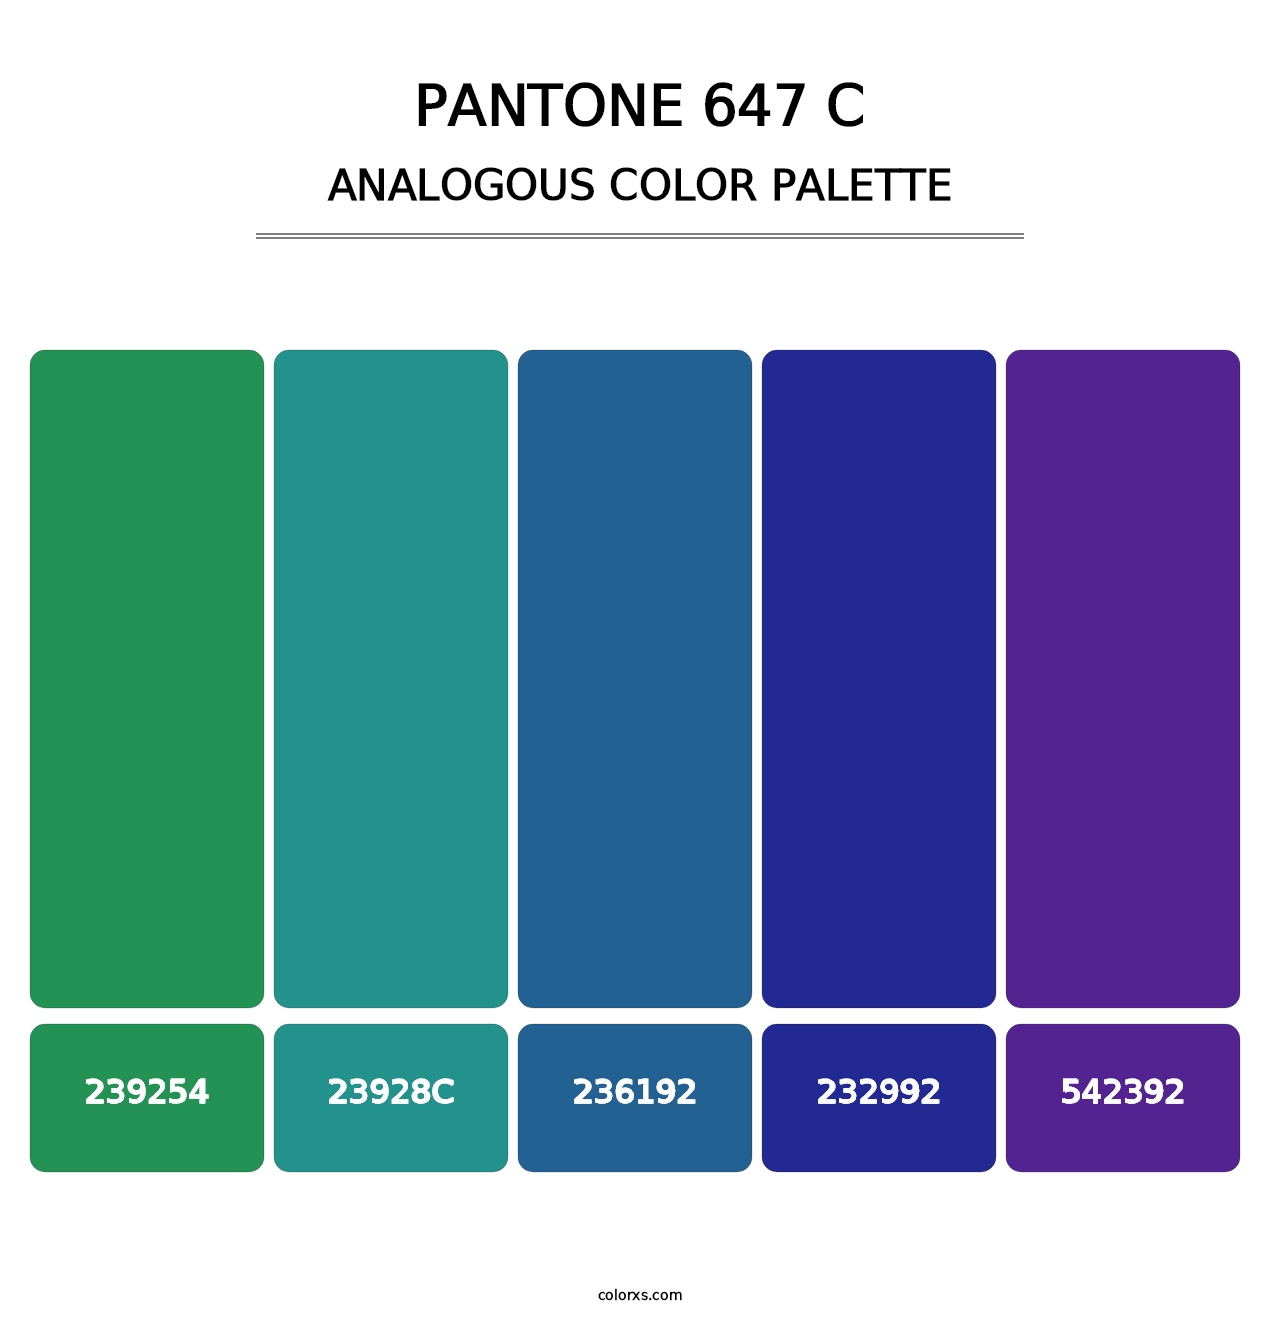 PANTONE 647 C - Analogous Color Palette